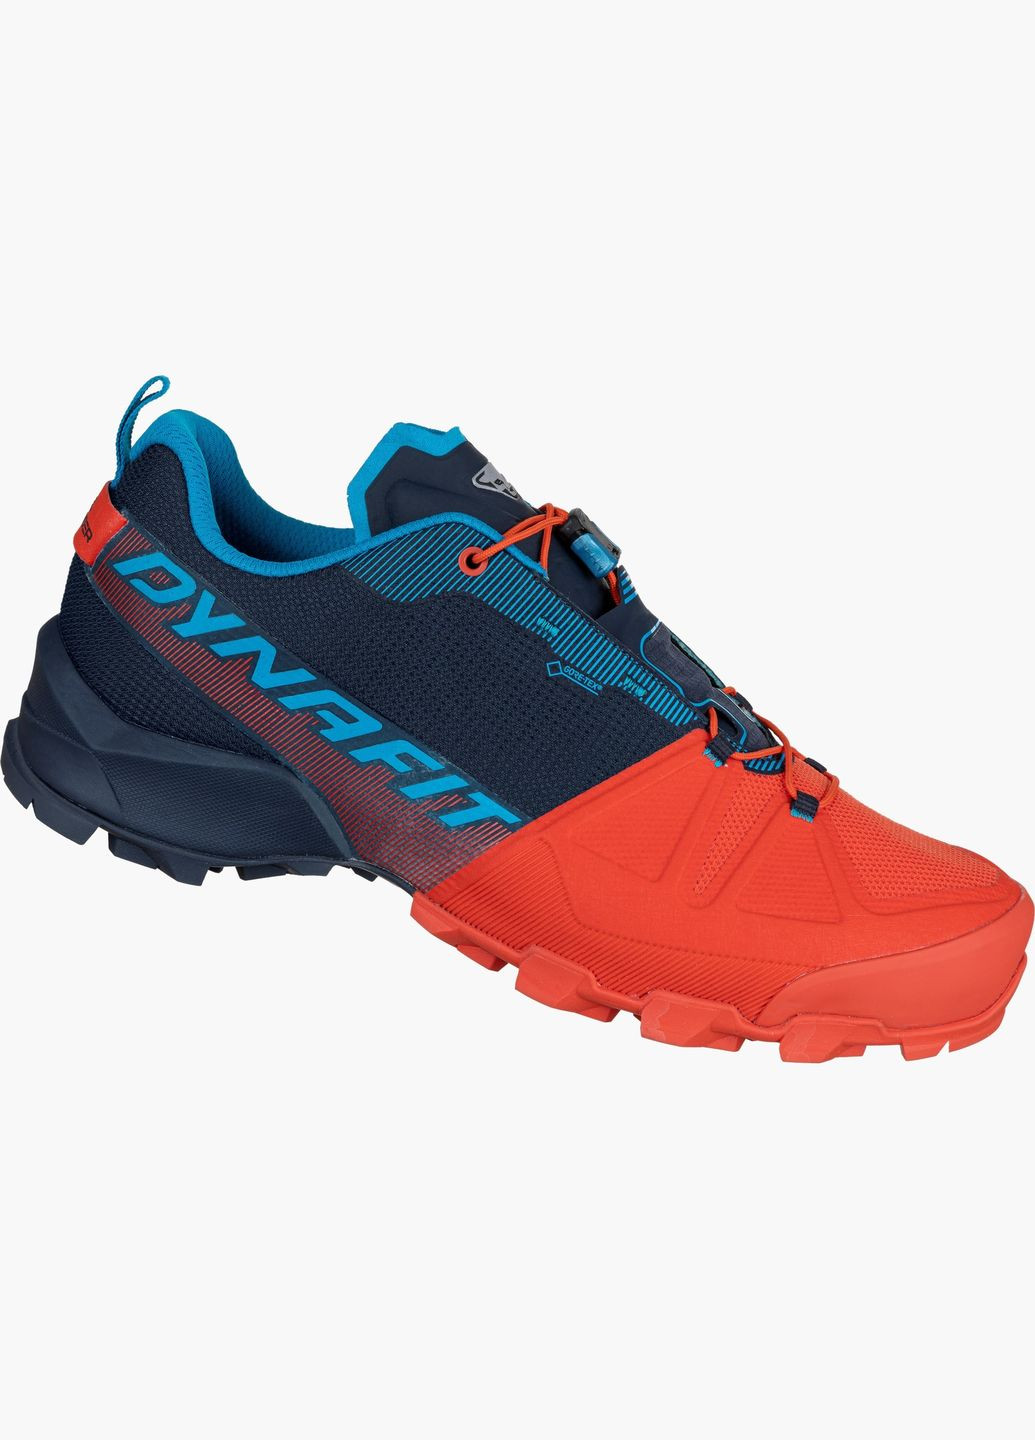 Комбіновані всесезон кросівки чоловічі transalper gtx синій-помаранчевий Dynafit